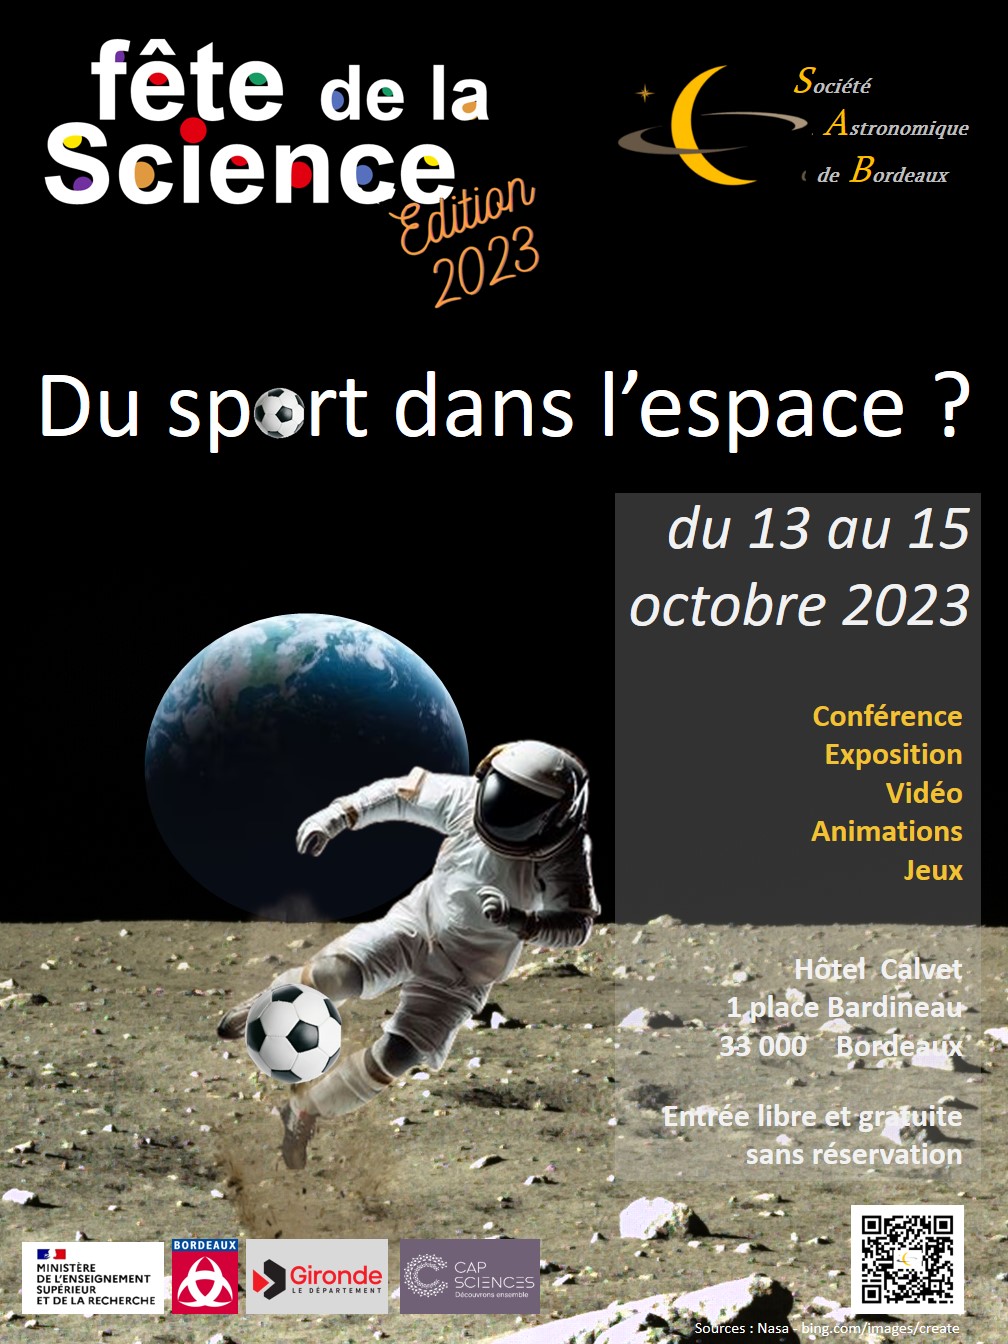 "Du sport dans l'espace ? " - dans le cadre de la Fête de la Science 2023